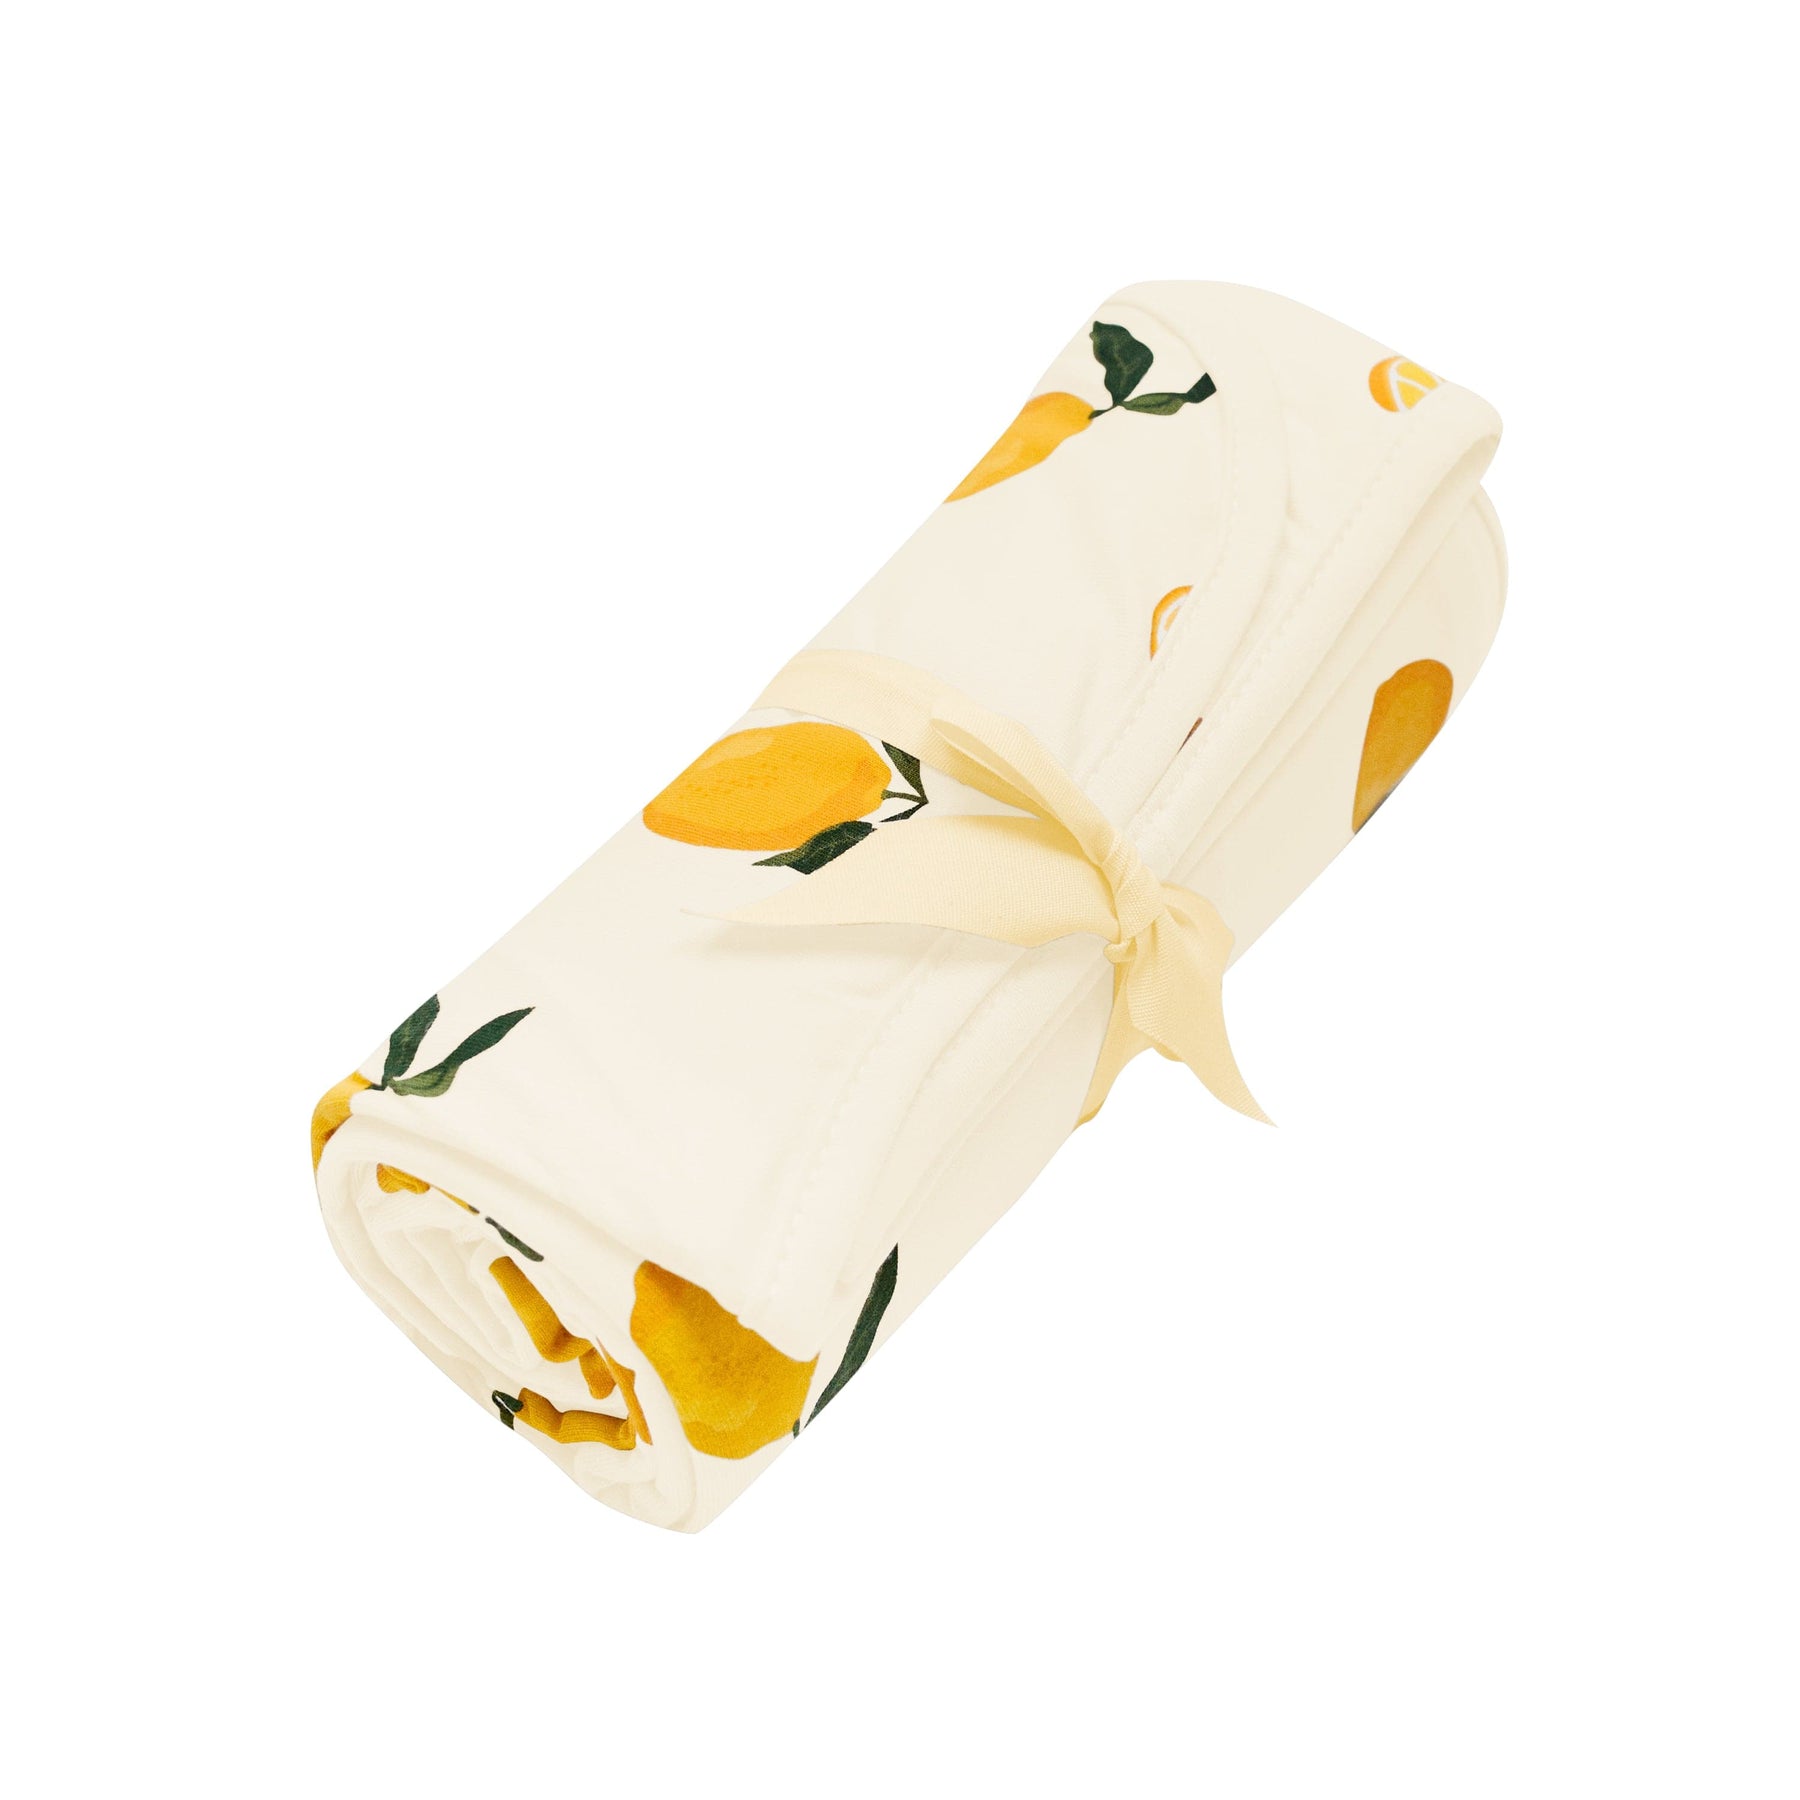 Kyte Baby Swaddling Blanket Lemon / Infant Swaddle Blanket in Lemon